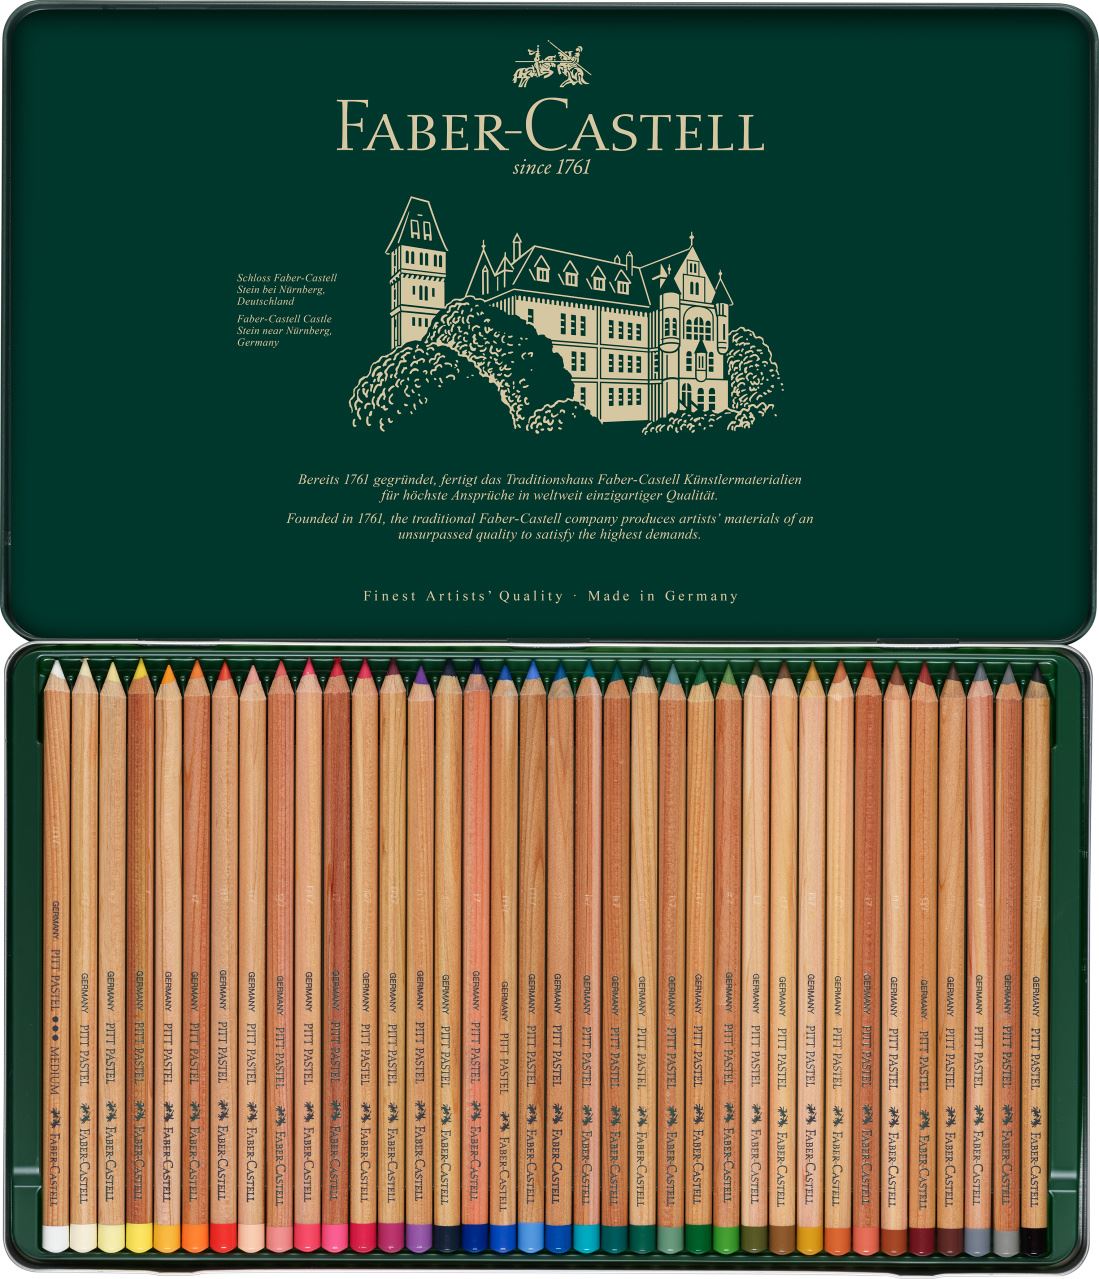 Faber-Castell - Pitt Pastellstift, 36er Metalletui